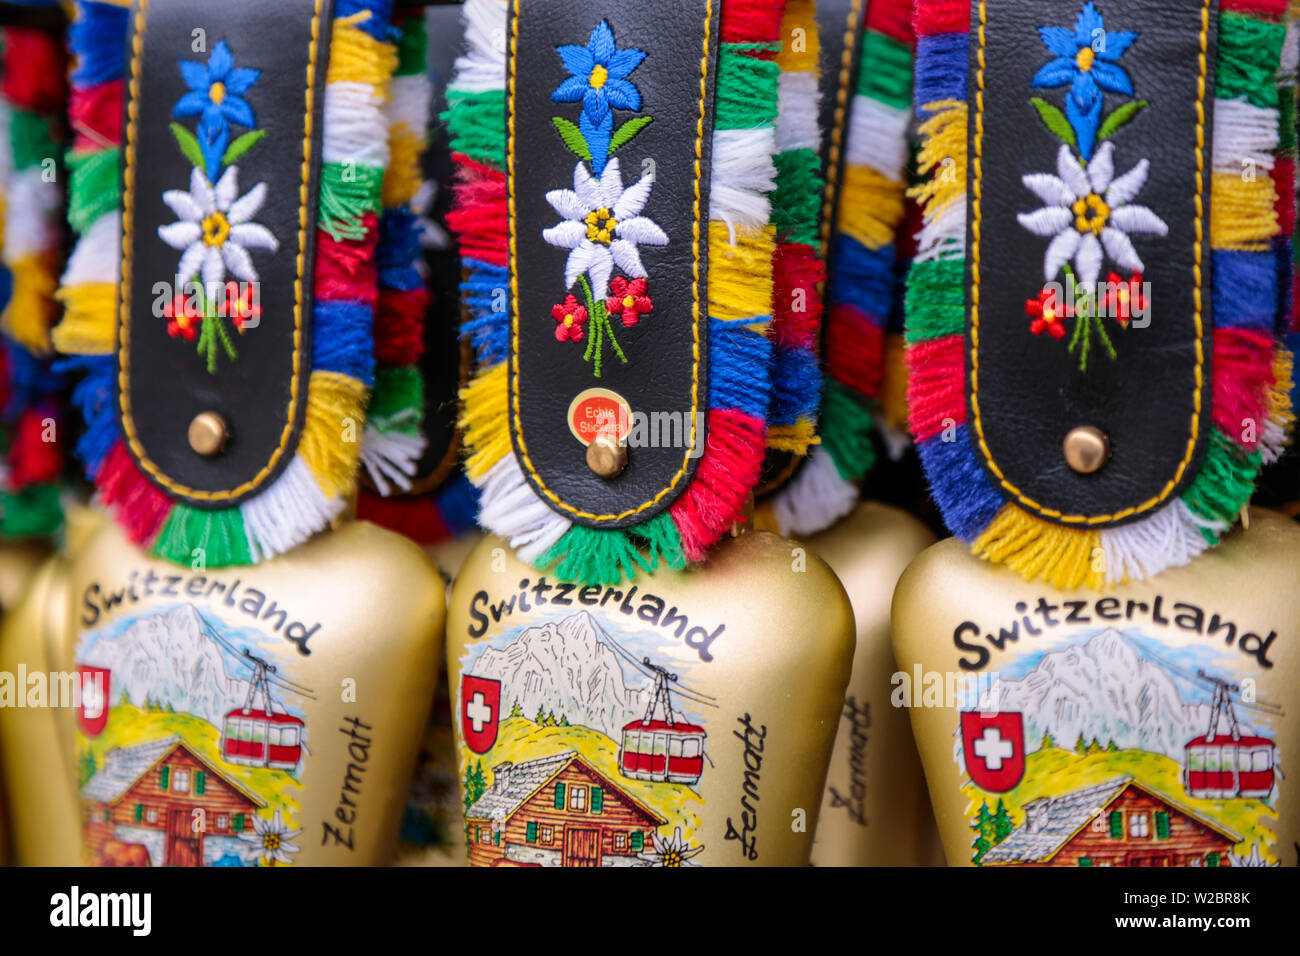 Cloches de Souvenirs à vendre, Zermatt, Valais, Suisse Banque D'Images